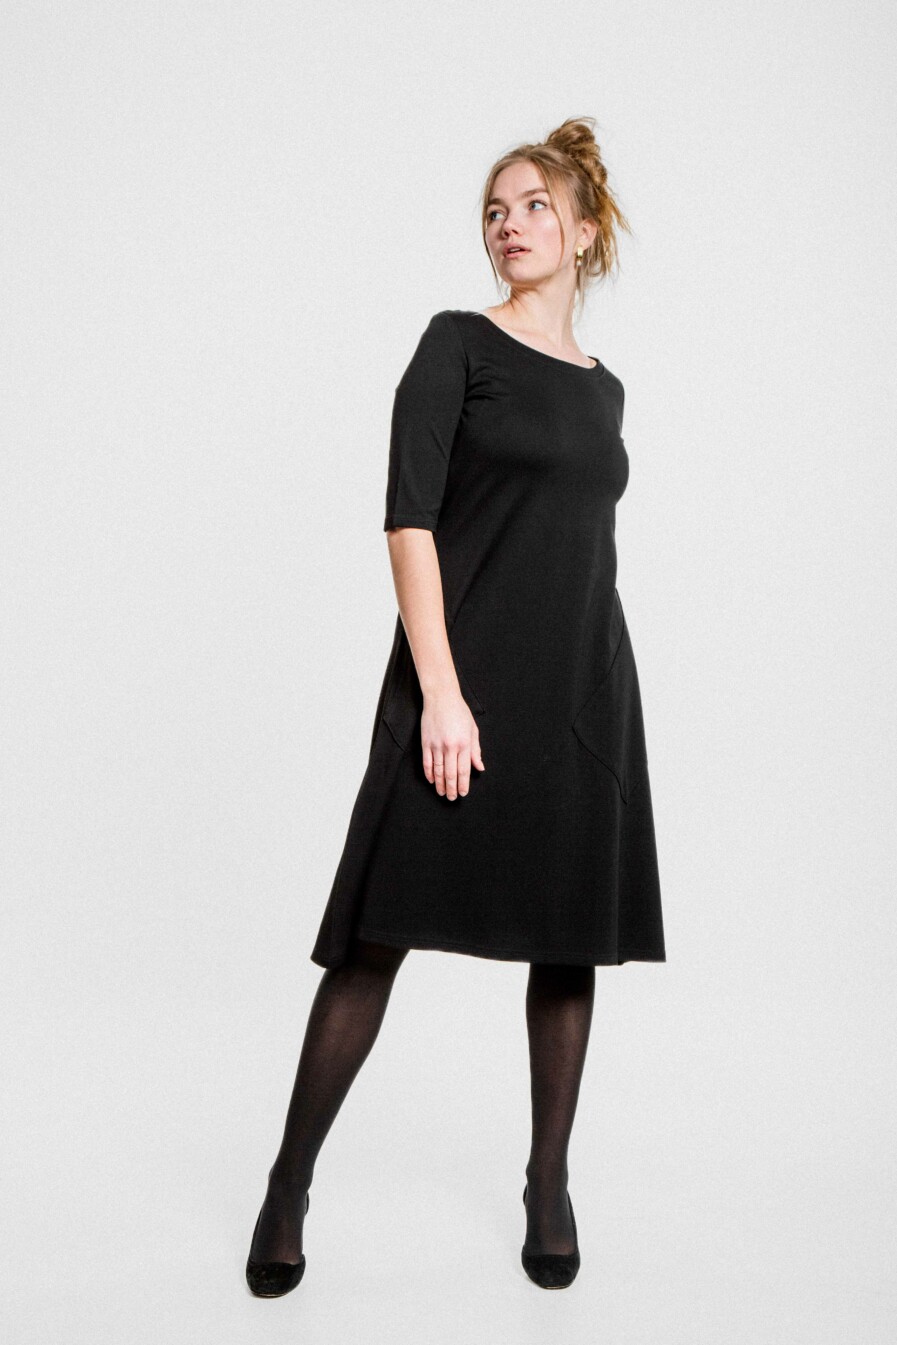 M50 Dress Noktirne with 3/4 sleeves | Black